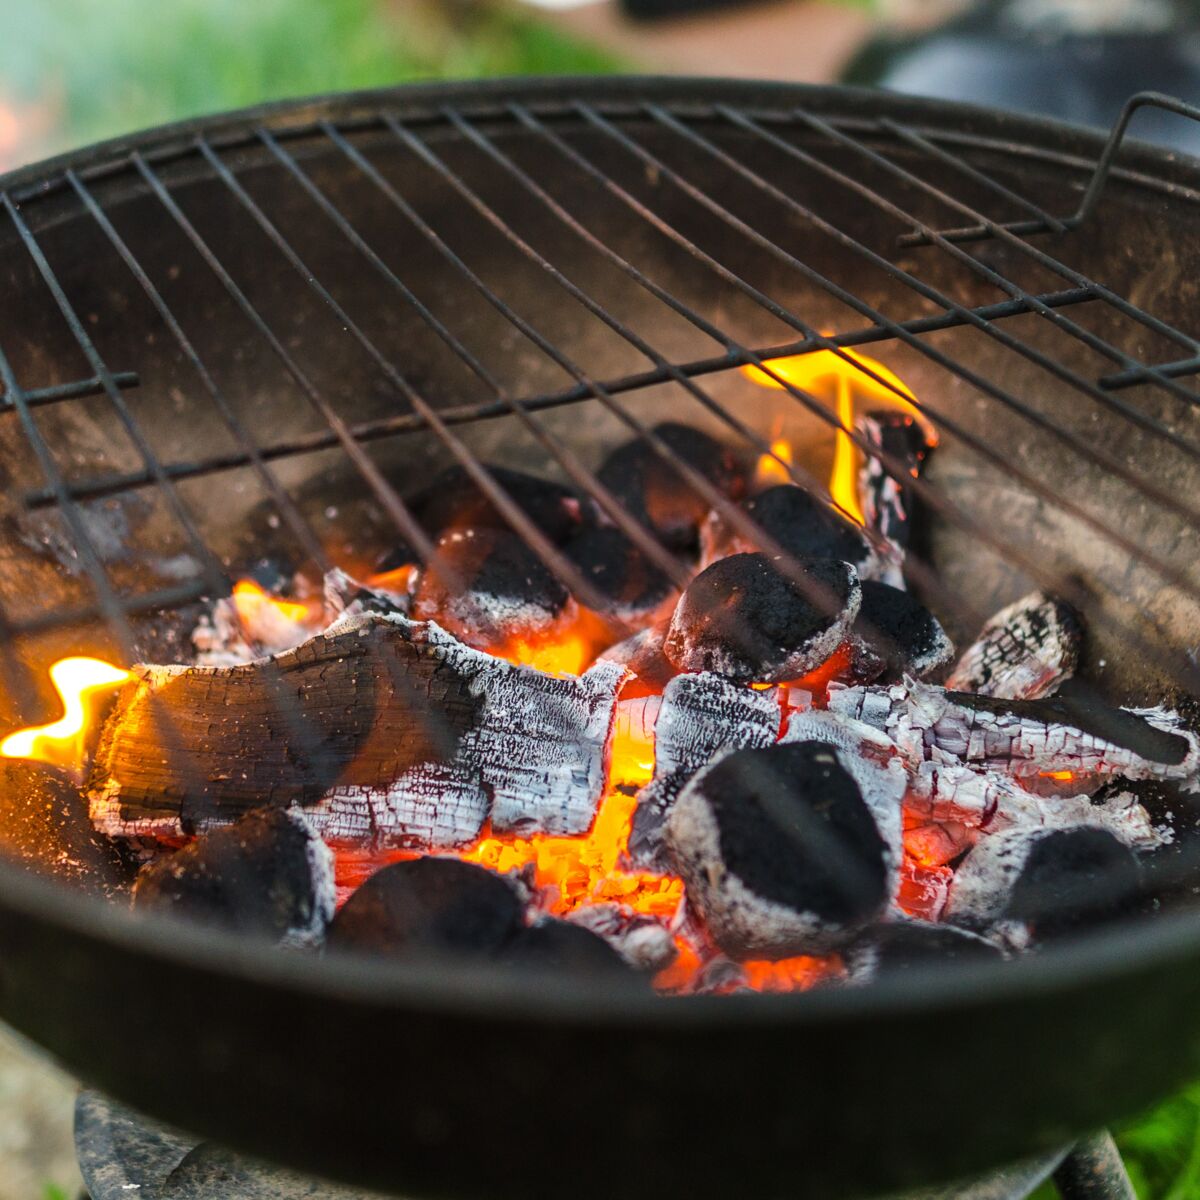 Comment nettoyer une grille de barbecue facilement ? - Gamm vert